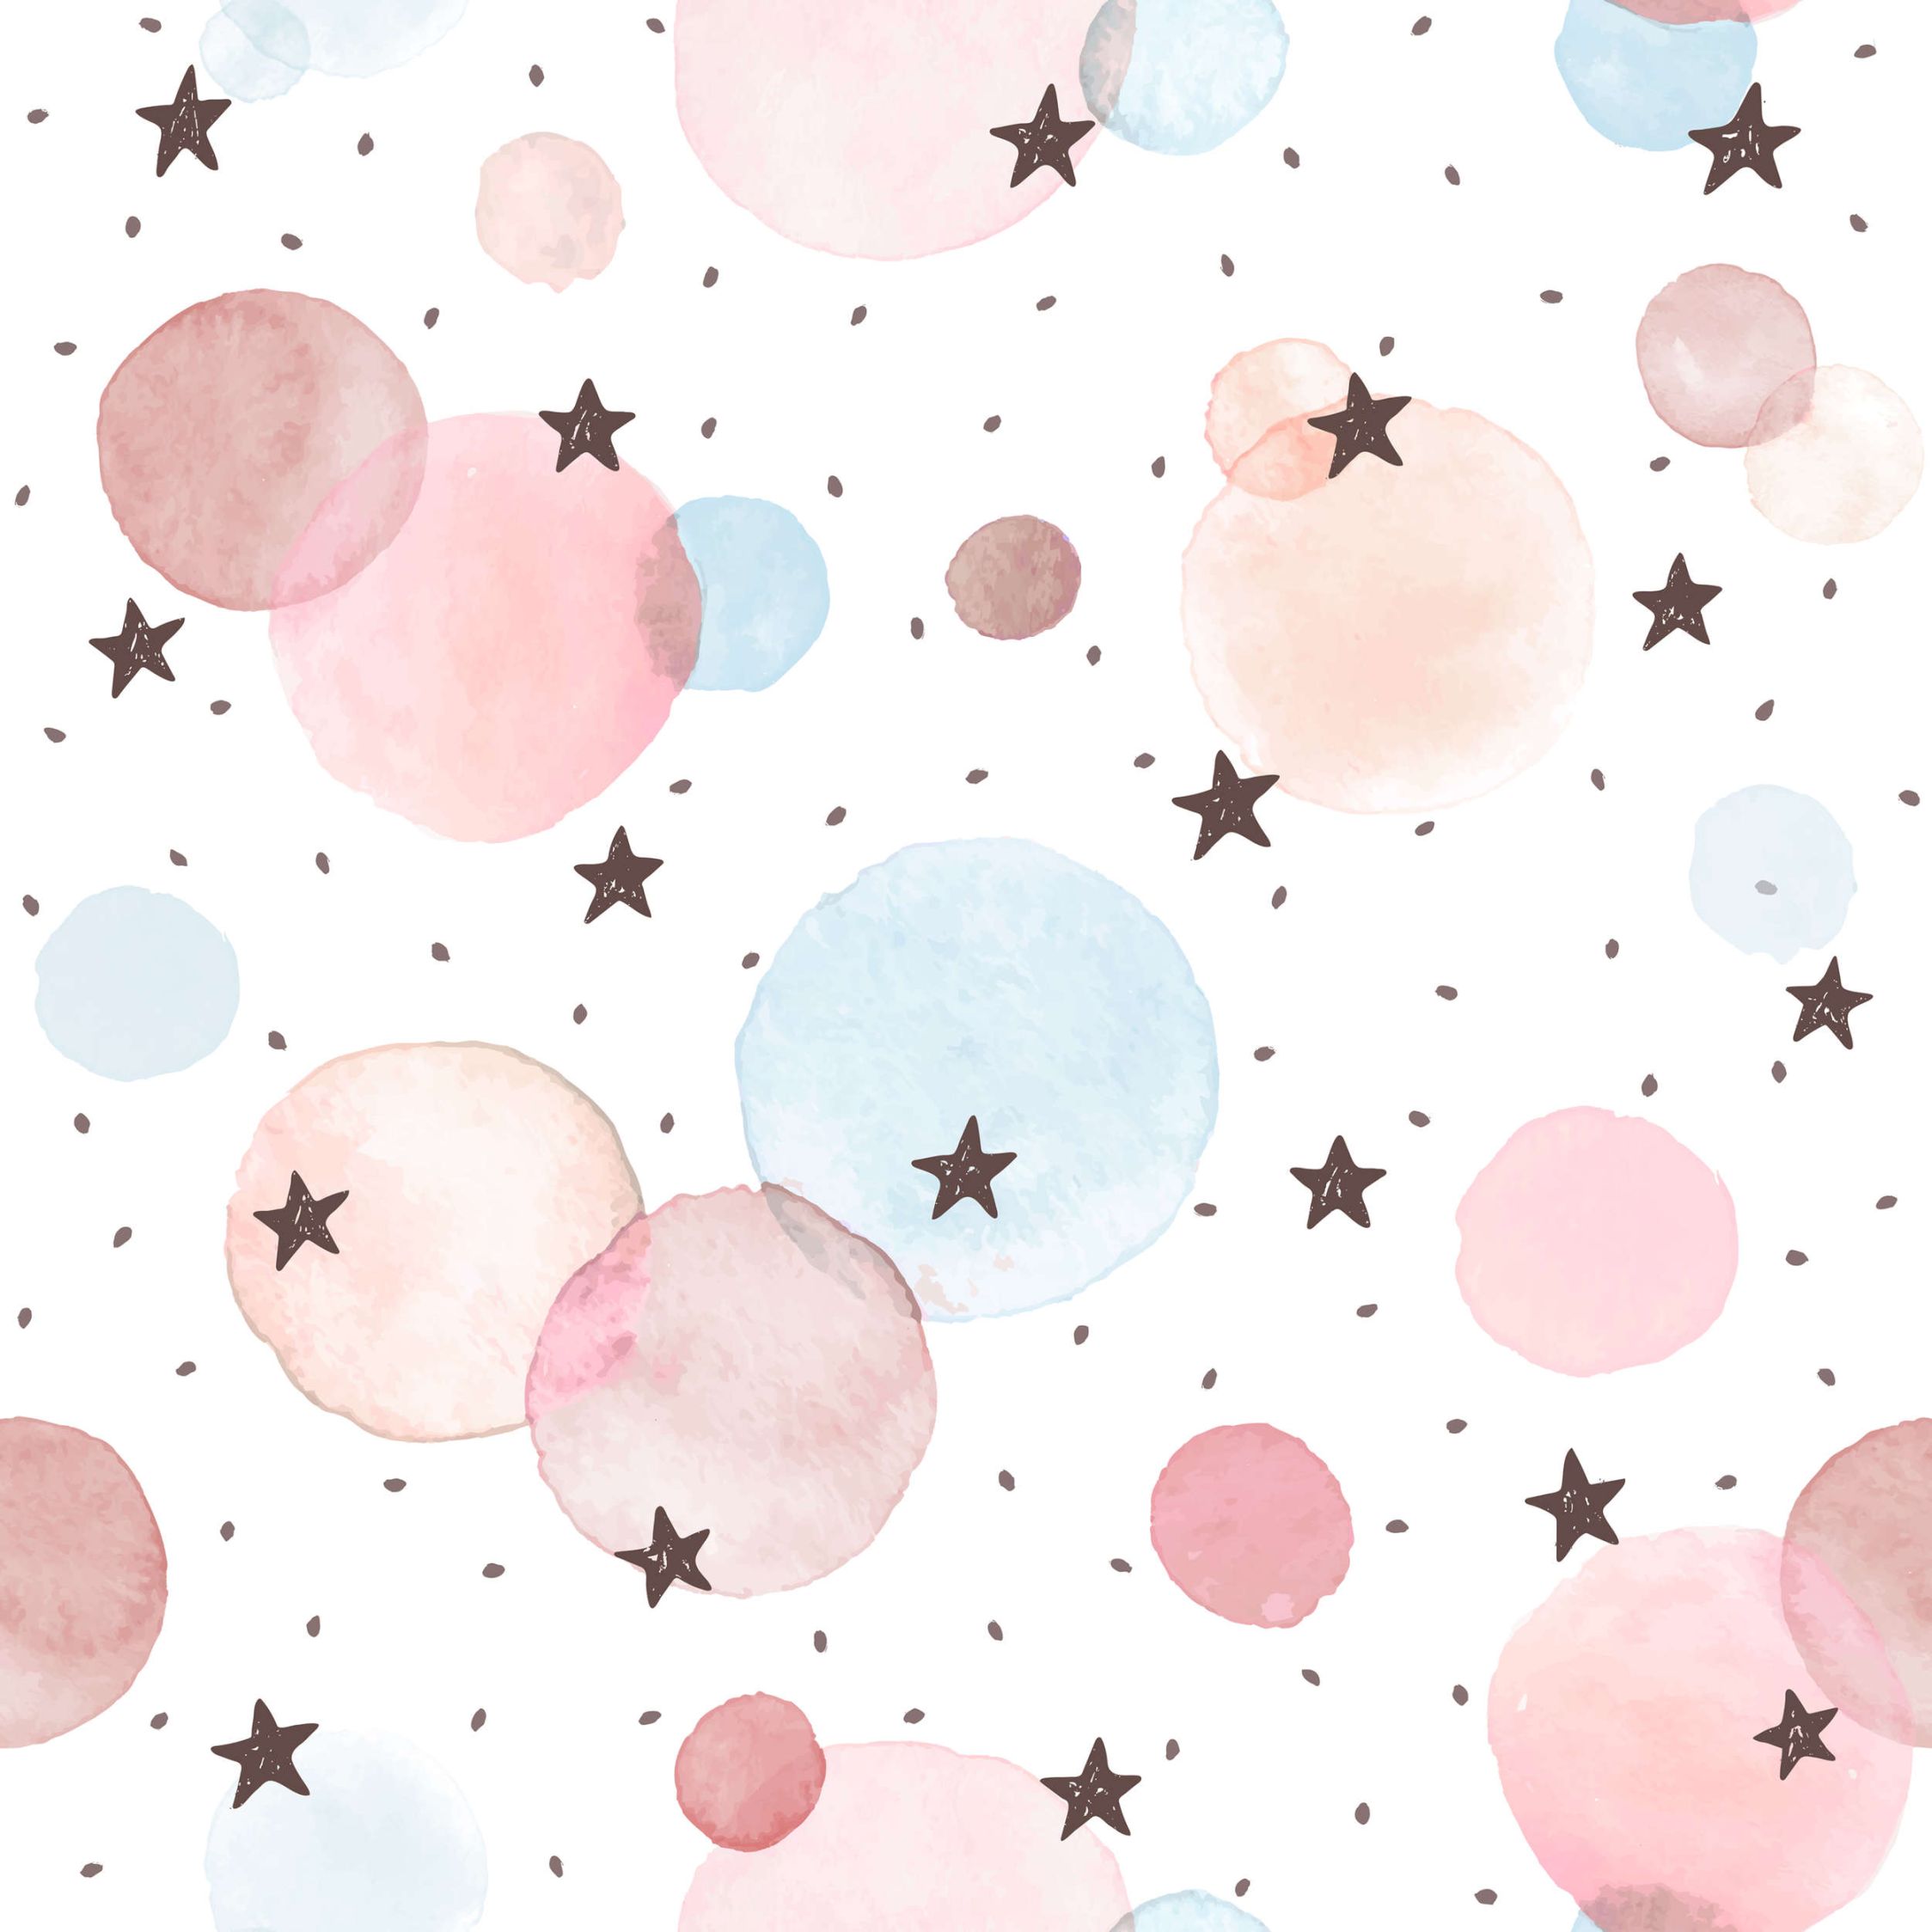             papier peint en papier pour chambre d'enfant avec étoiles, pois et cercles - intissé lisse & nacré
        